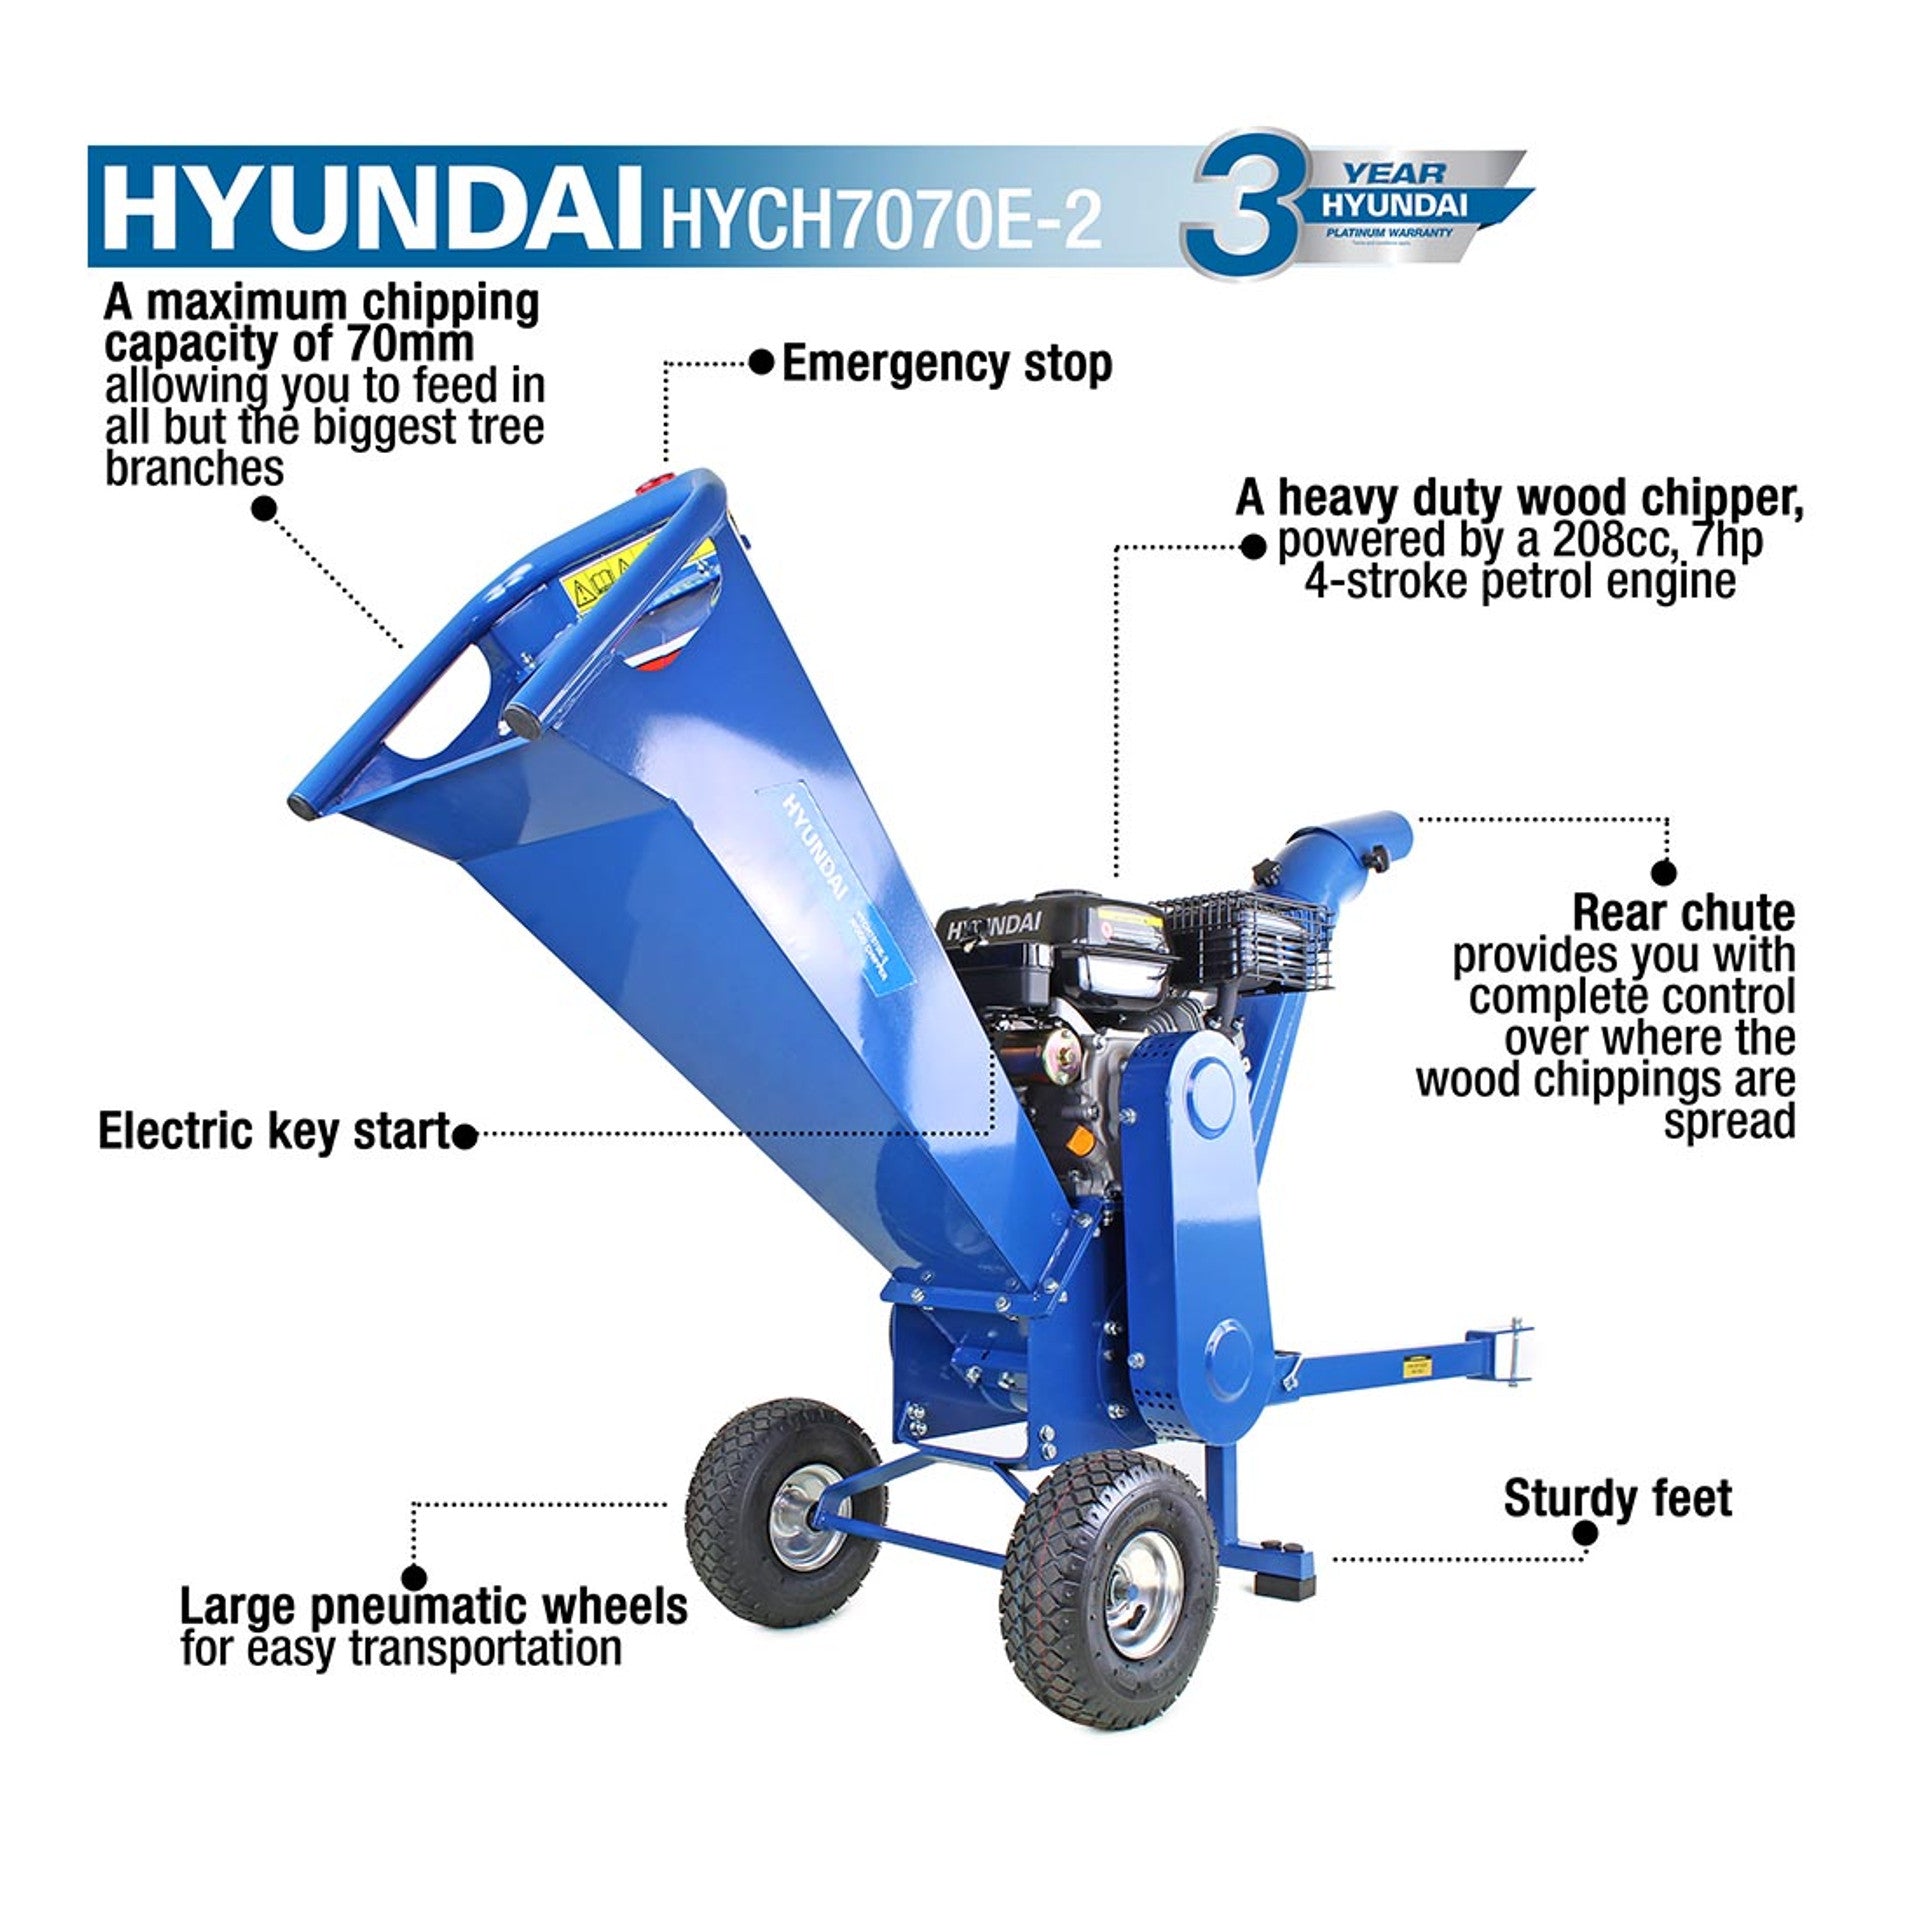 Hyundai HYCH7070E-2 212cc Petrol Garden Wood Chipper